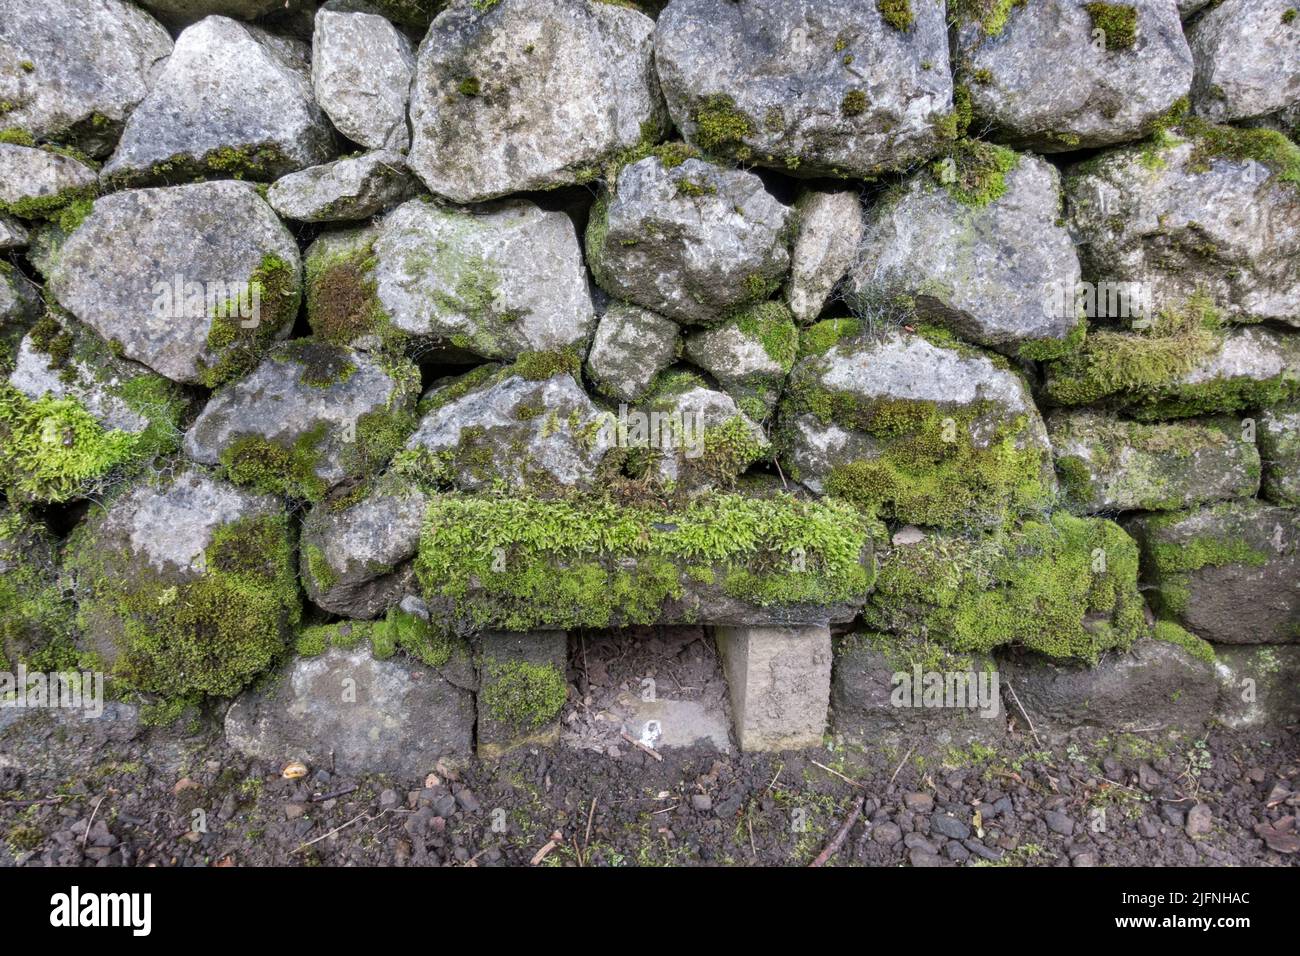 Exemple d'un smoot carré dans un mur calcaire sec, faisant partie d'une exposition de murs en pierre sèche, Shibden Park, Halifax, Yorkshire, Royaume-Uni. Banque D'Images